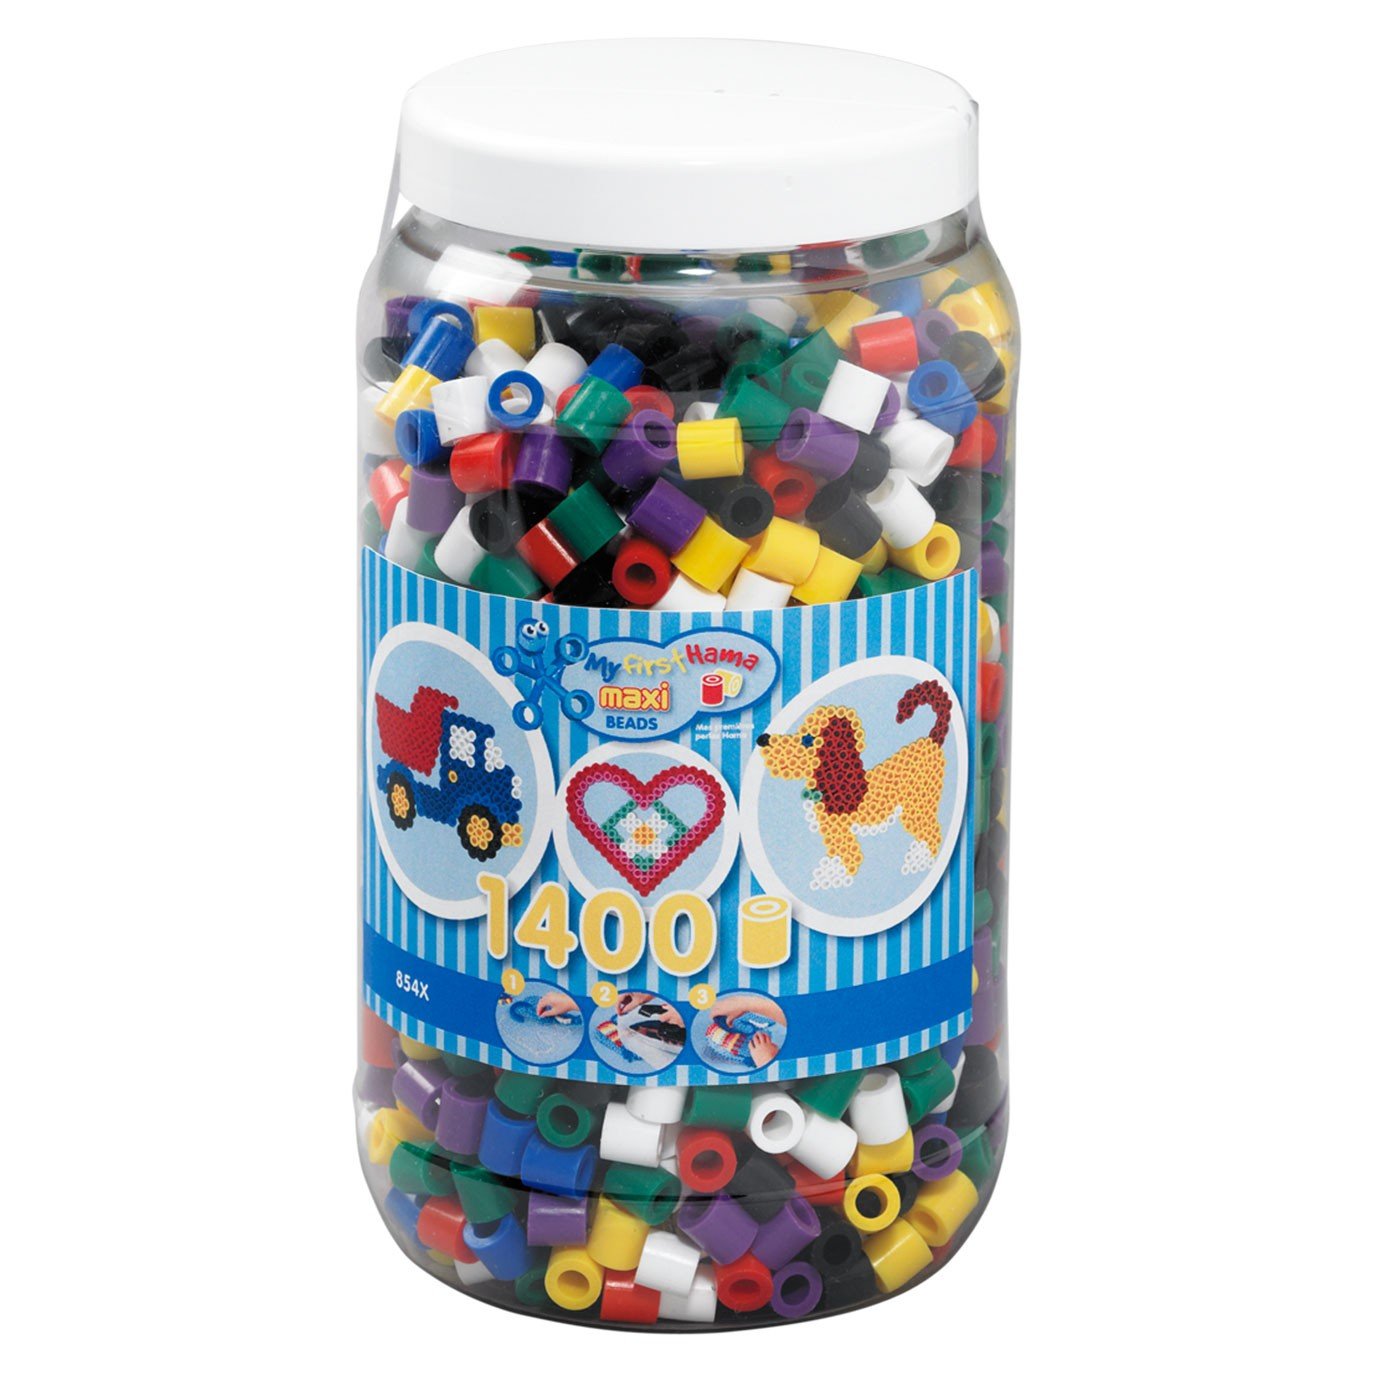 HAMA - Maxi Beads - Beads in bucket - 1400pcs (8540) - Leker